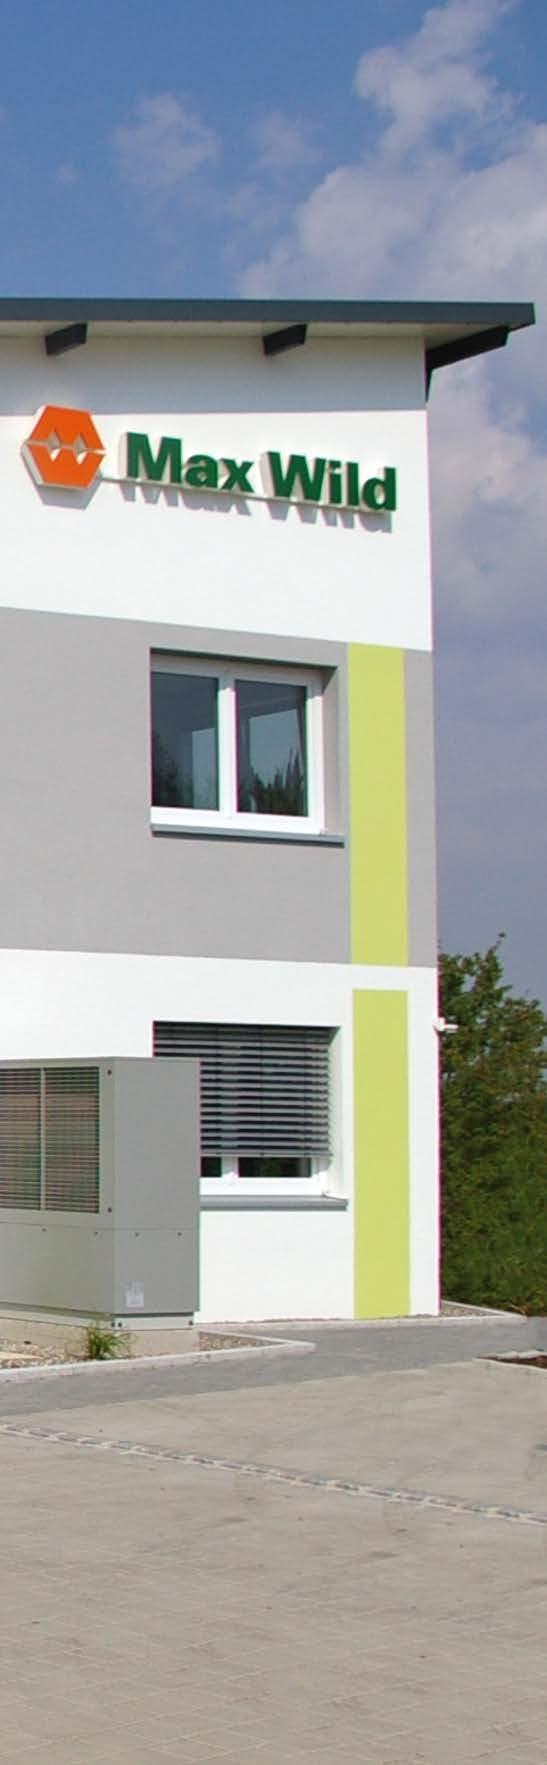 Auch beim Bau des neuen Bürogebäudes am Standort in Dornstadt hat Max Wild auf die Tube gedrückt. Der Neubau entstand innerhalb von 6 Monaten.